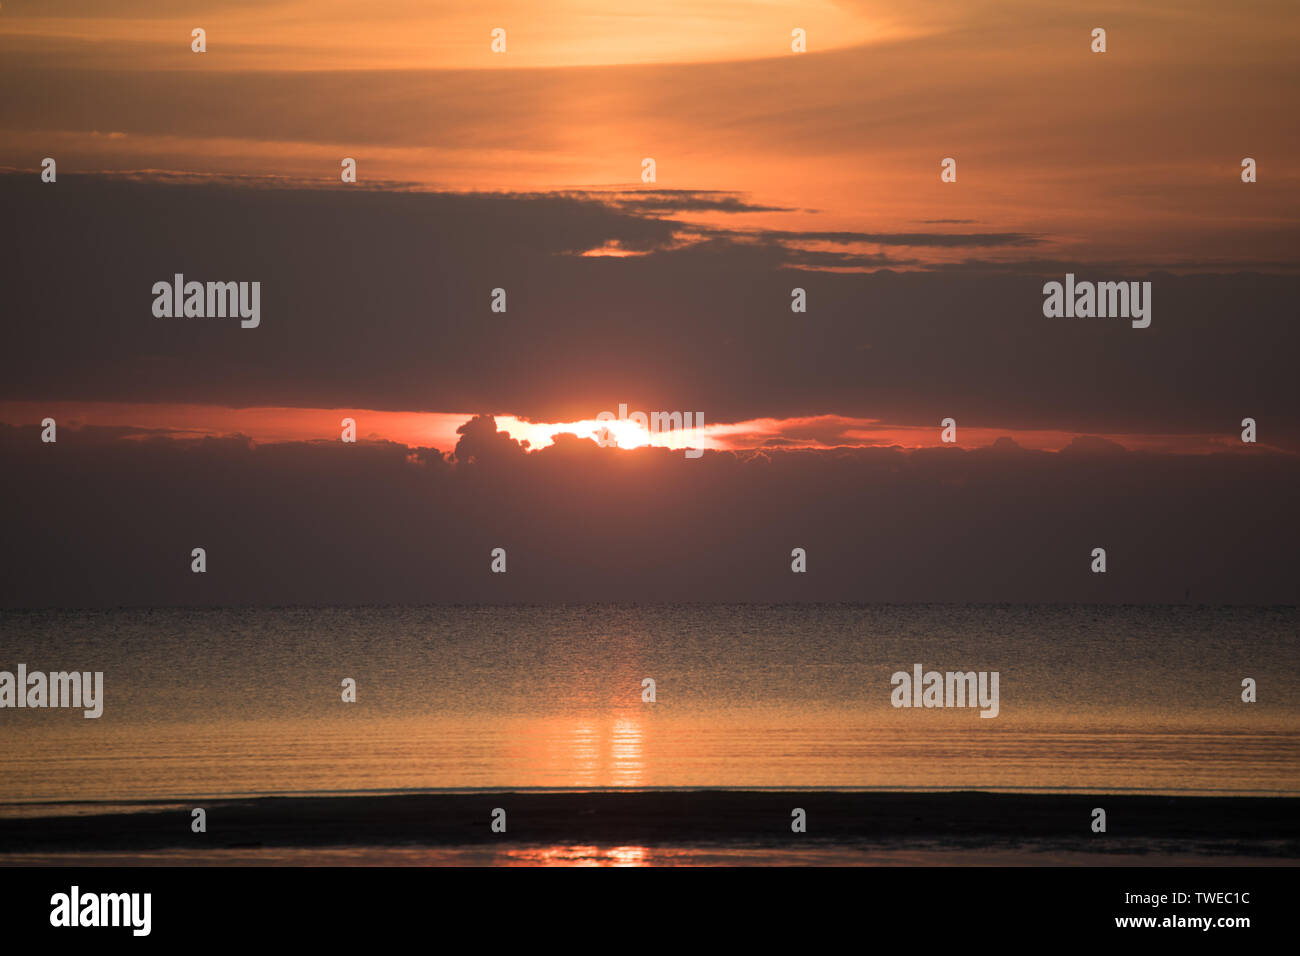 sunset on the sea in the summer season Stock Photo